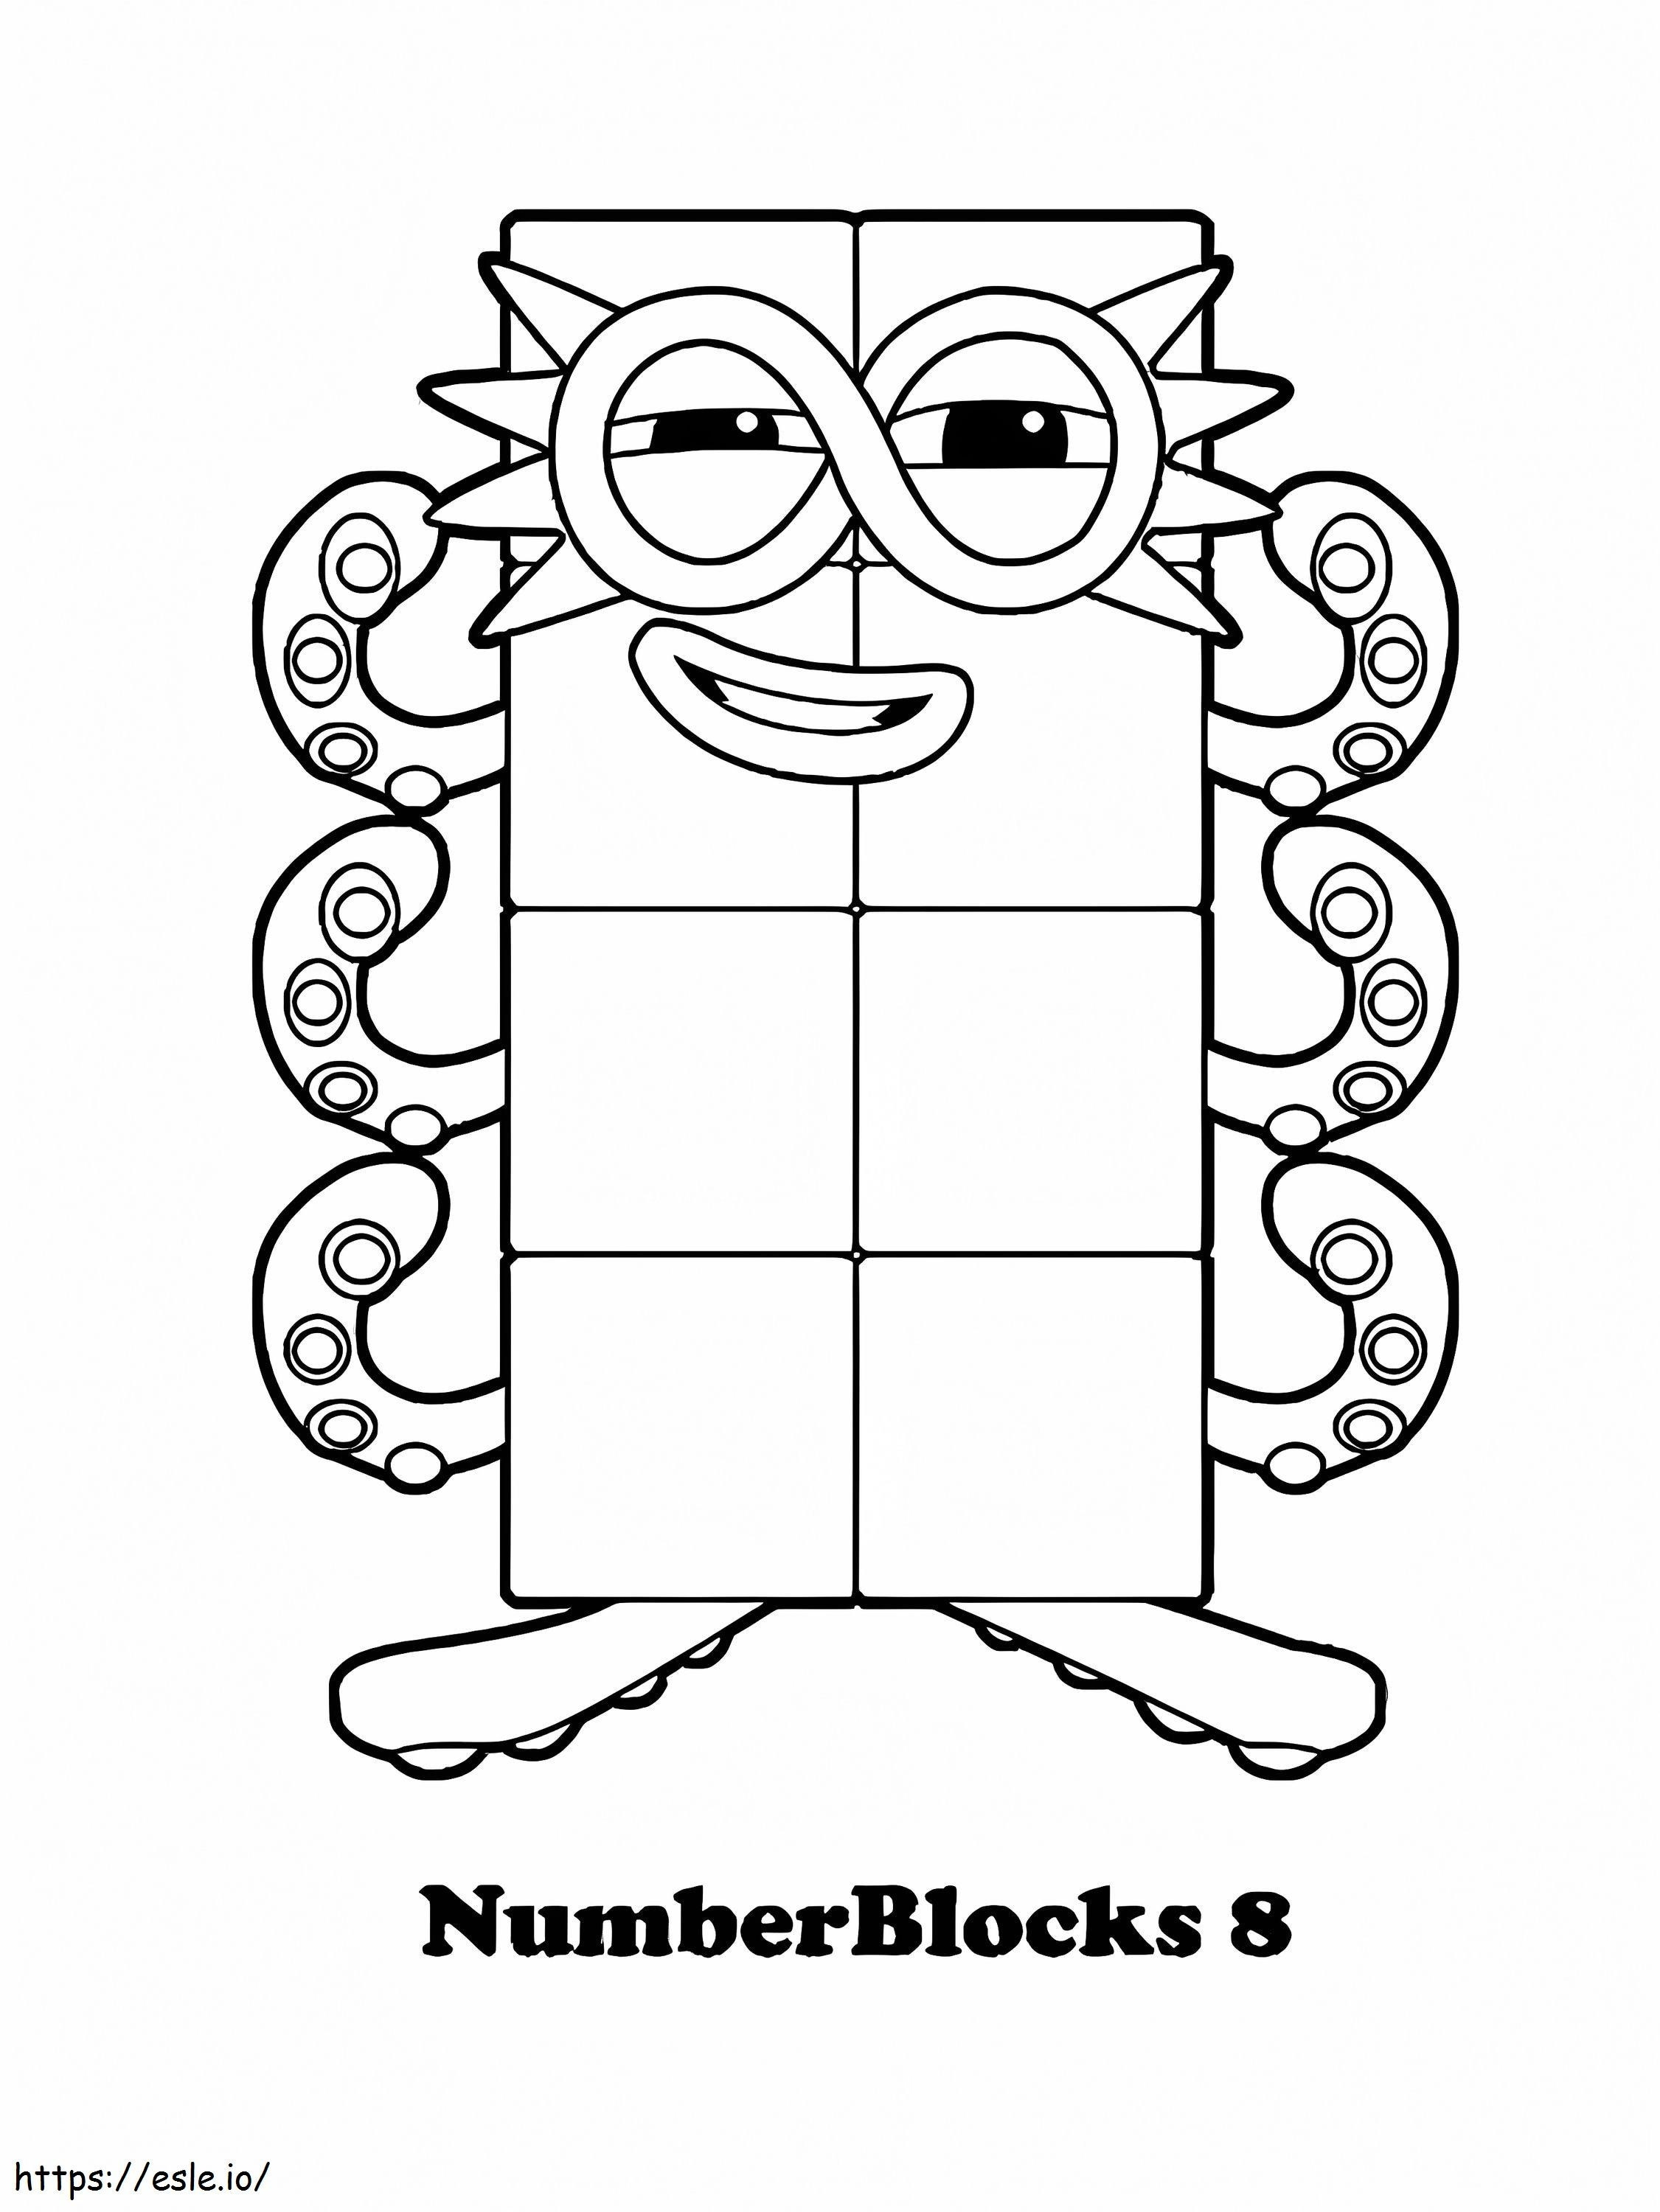 Sayı Blokları 8 boyama